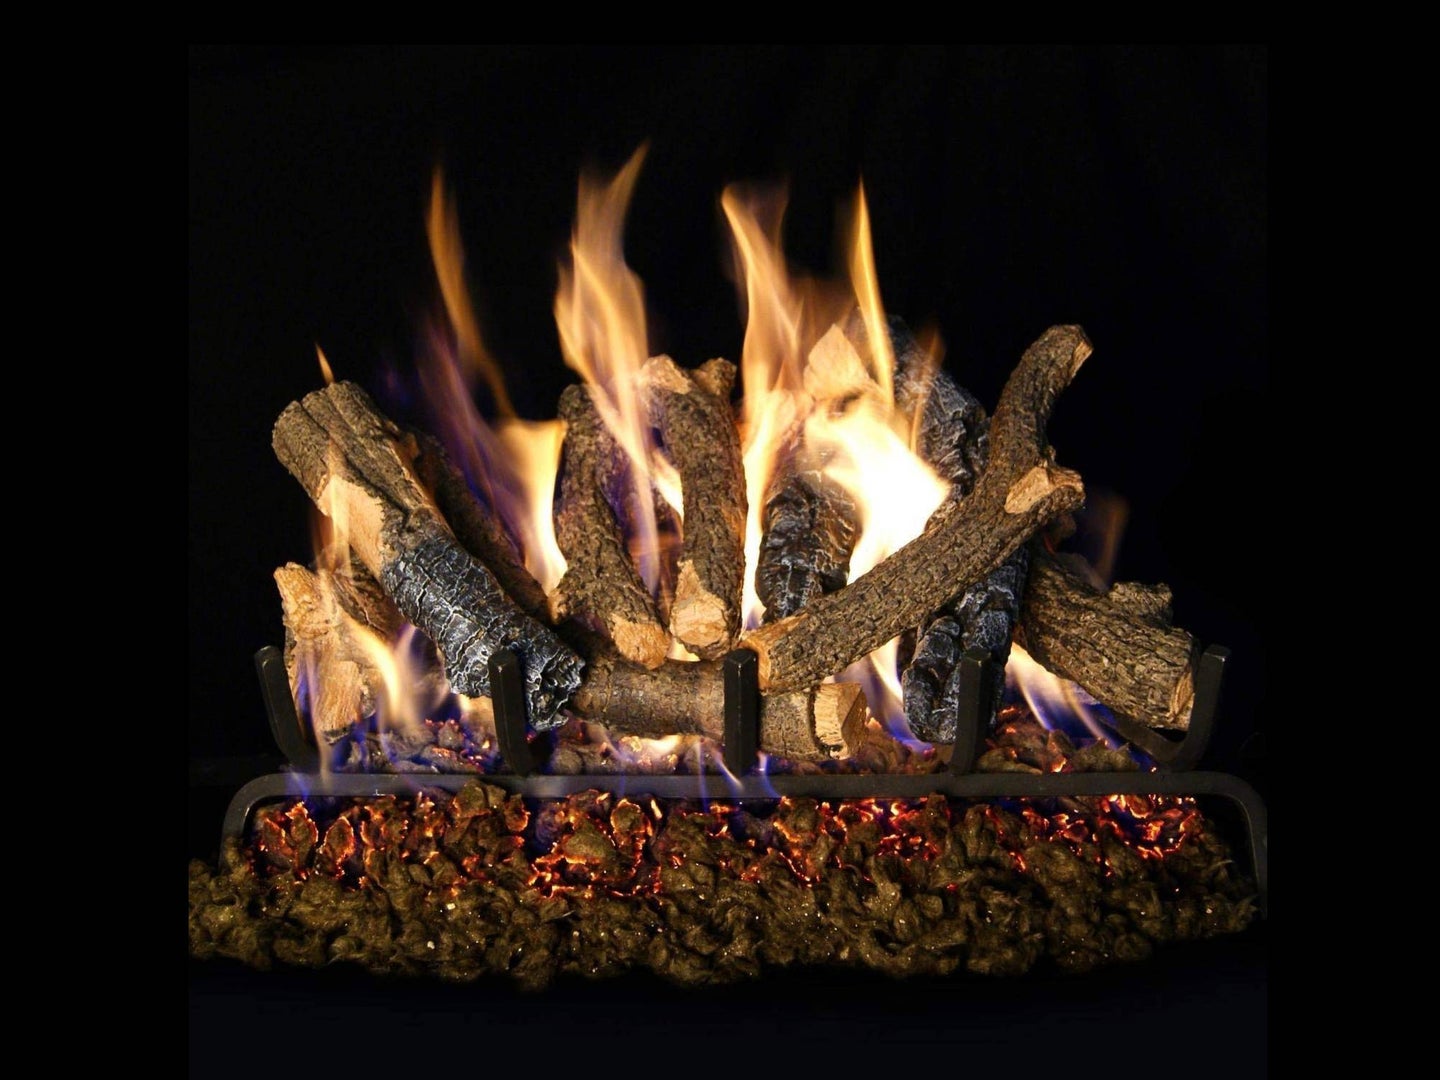 A warm fire